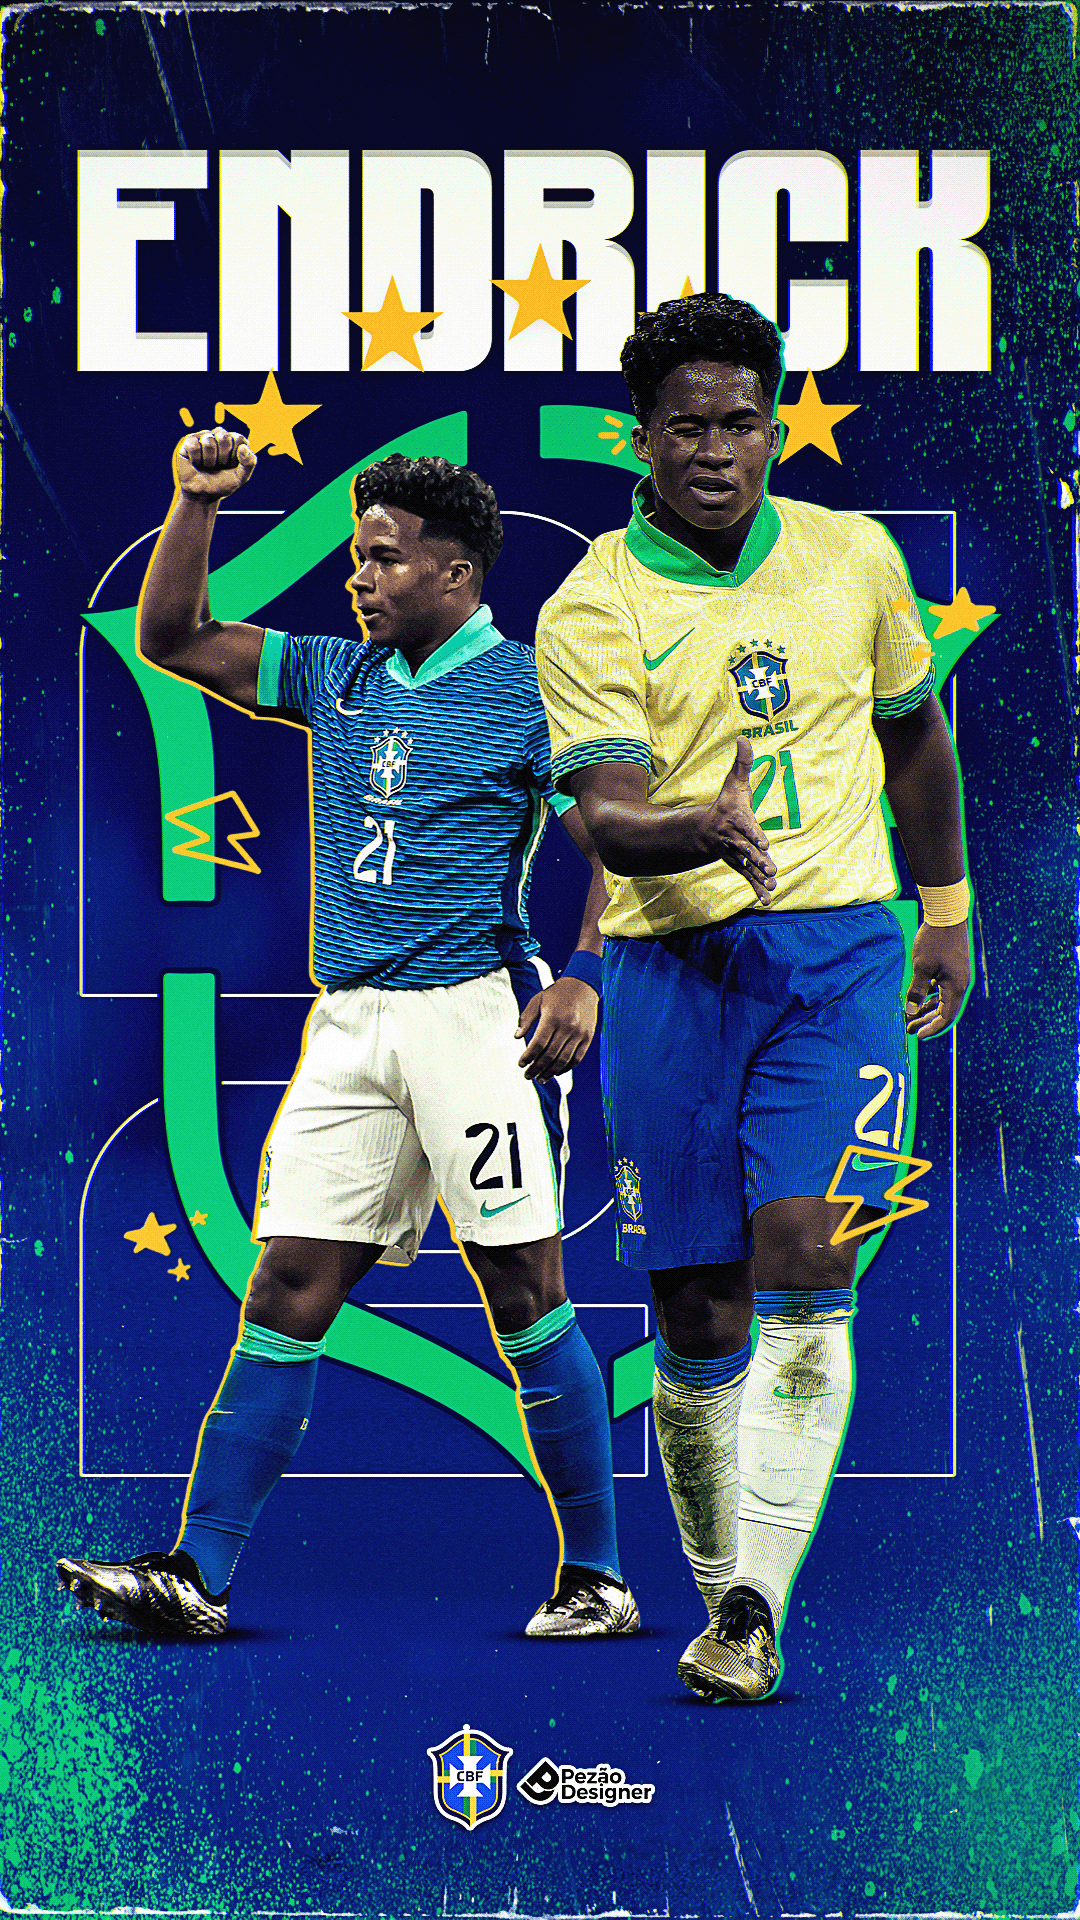 seleção brasileira CBF futebol Sports Design Graphic Designer design flyer poster futebol brasileiro endrick